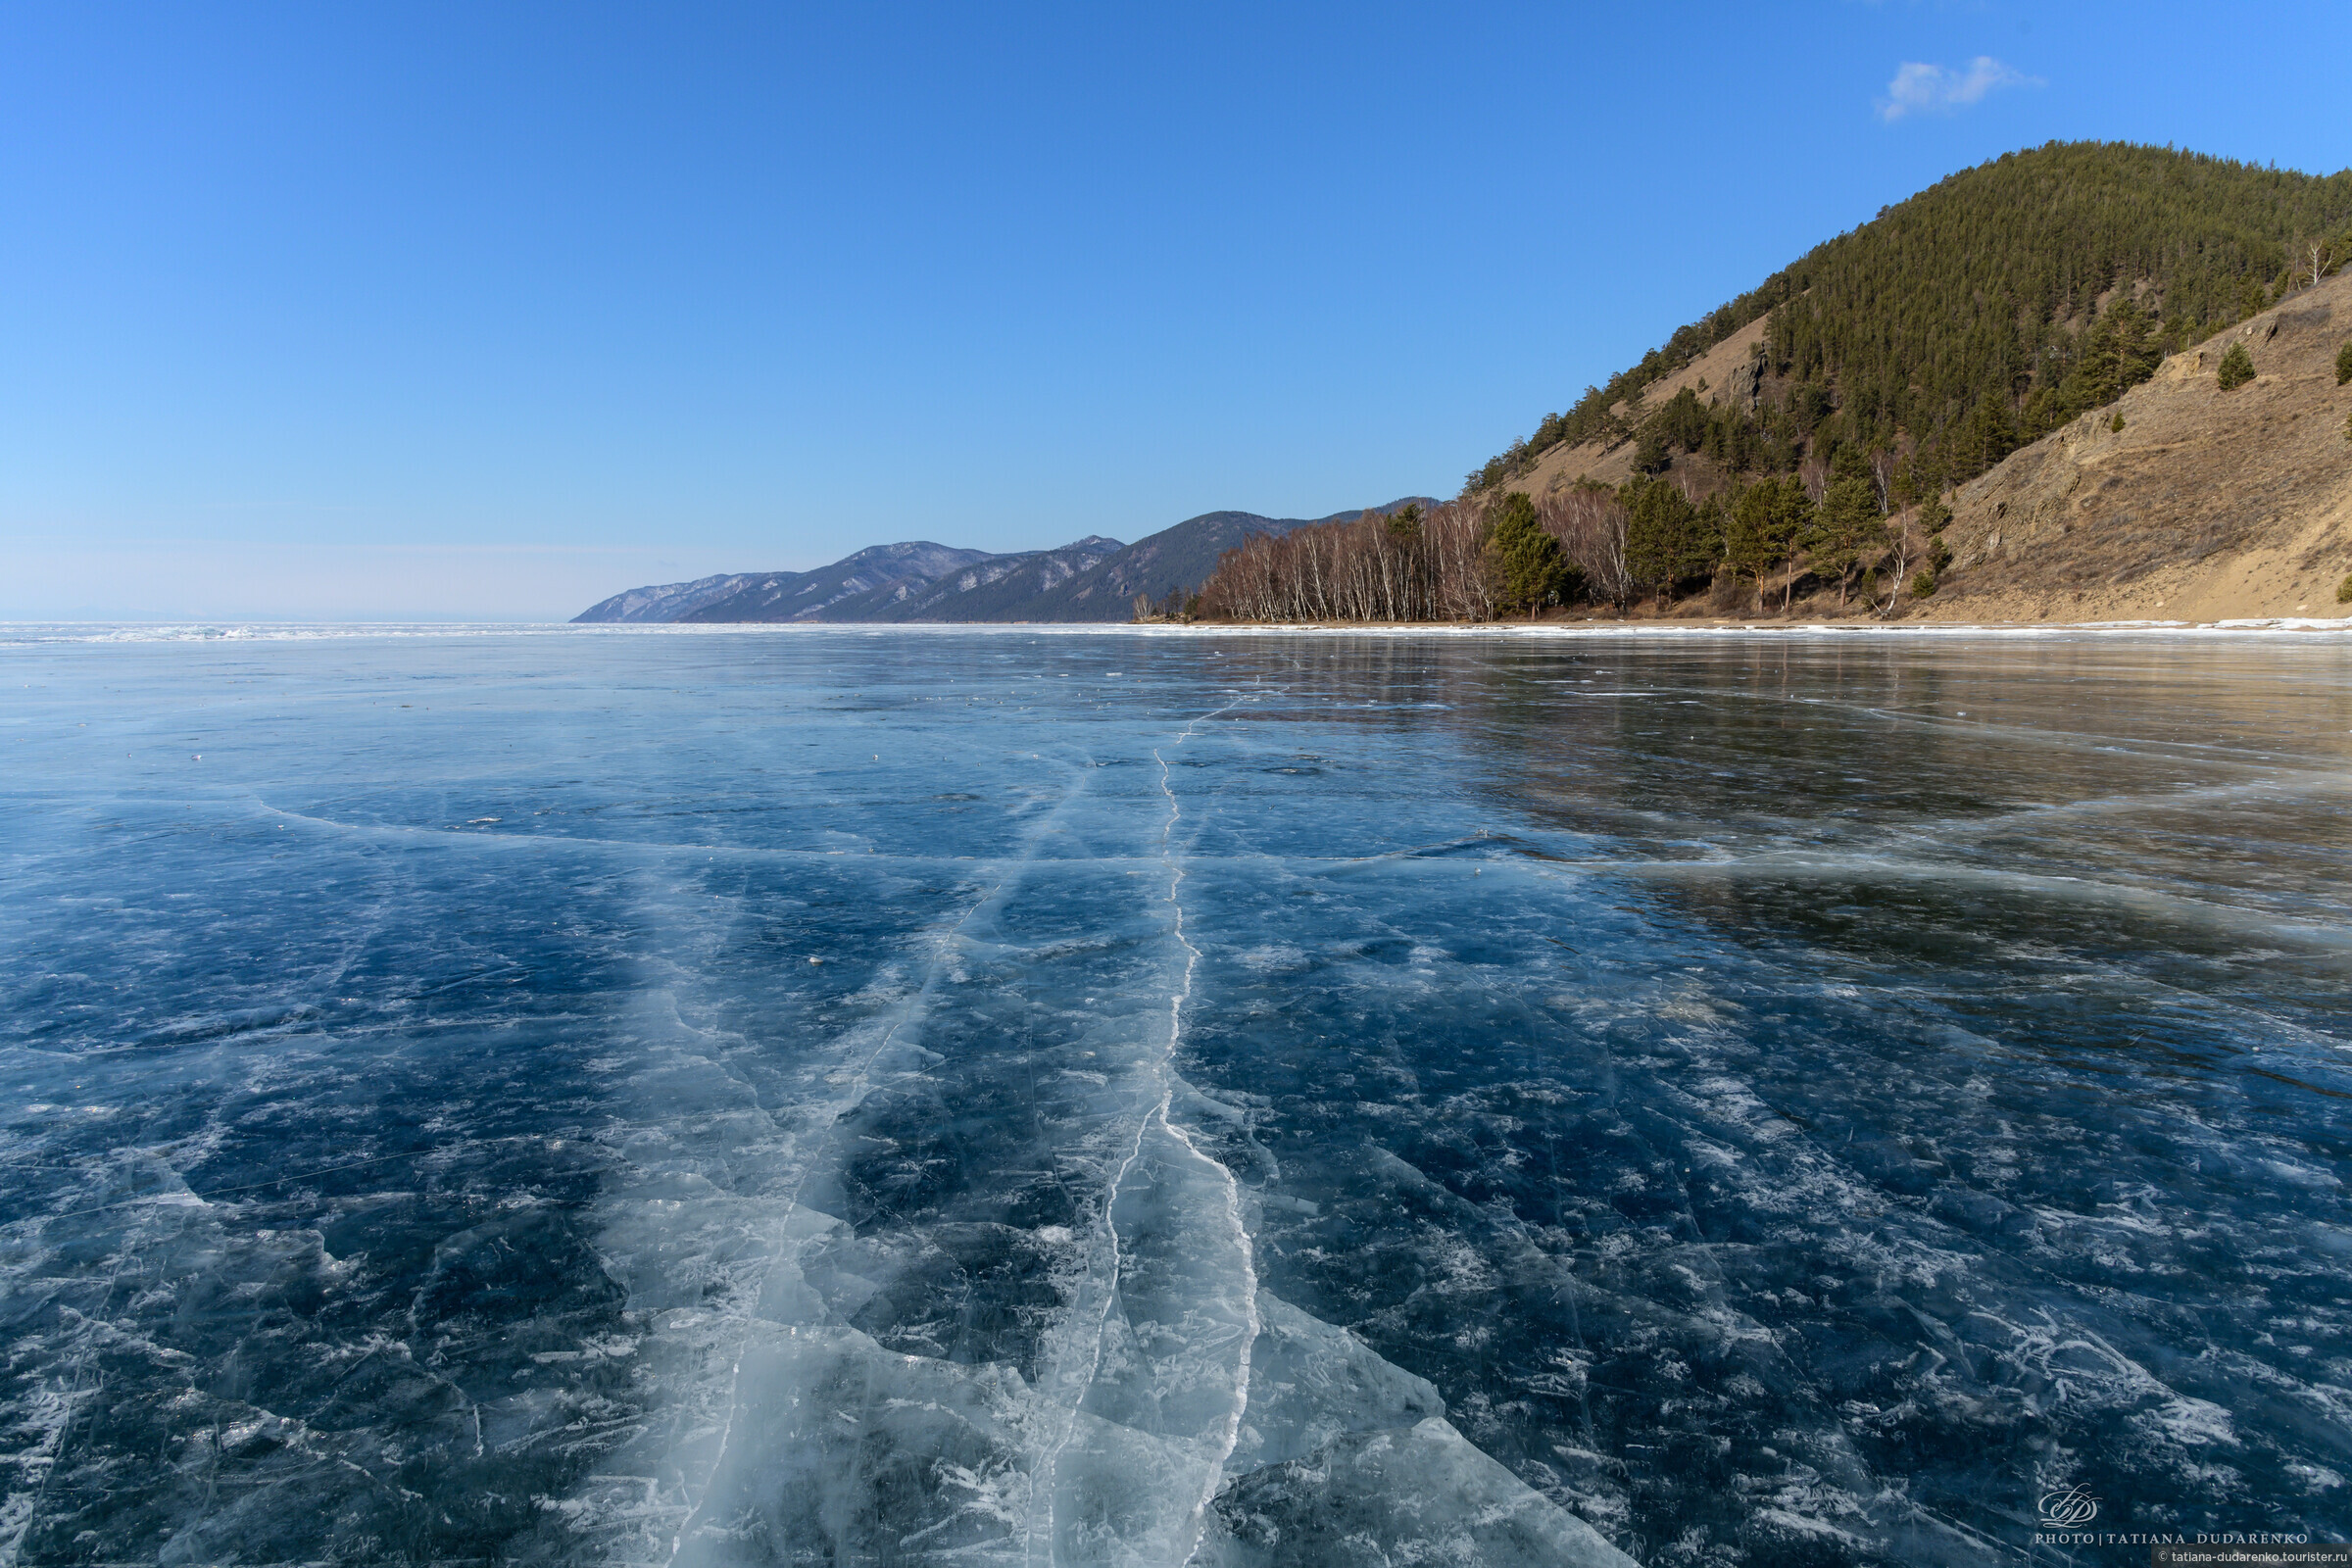 Байкал это точное озеро. Озеро Байкал, Иркутская область, Бурятия. Озеро Байкал (Иркутская область, Иркутск). Иркутск оз Байкал. Байкал пресноводное озеро.